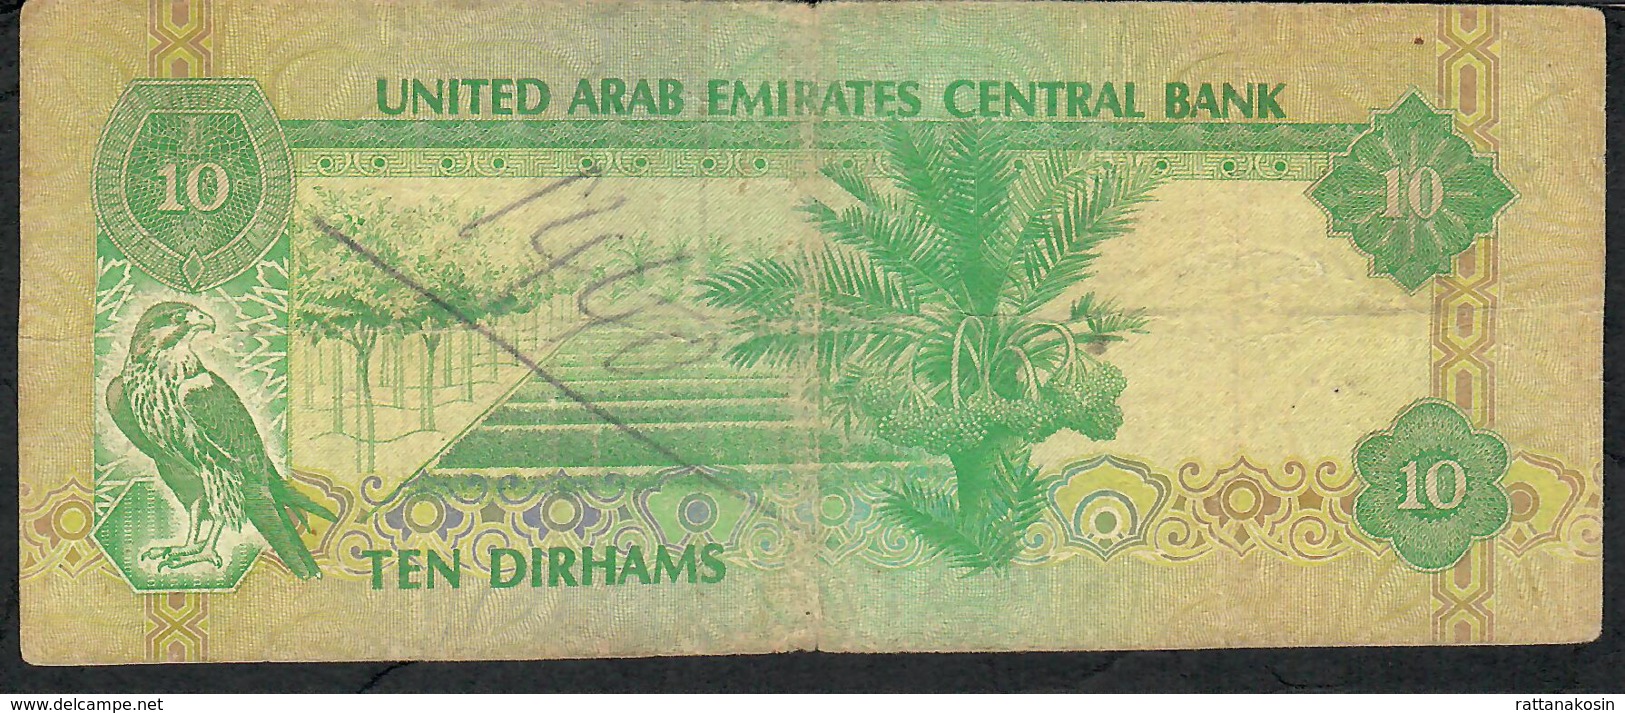 U.A.E. P8 10 DIRHAMS 1982 FINE - Emirats Arabes Unis